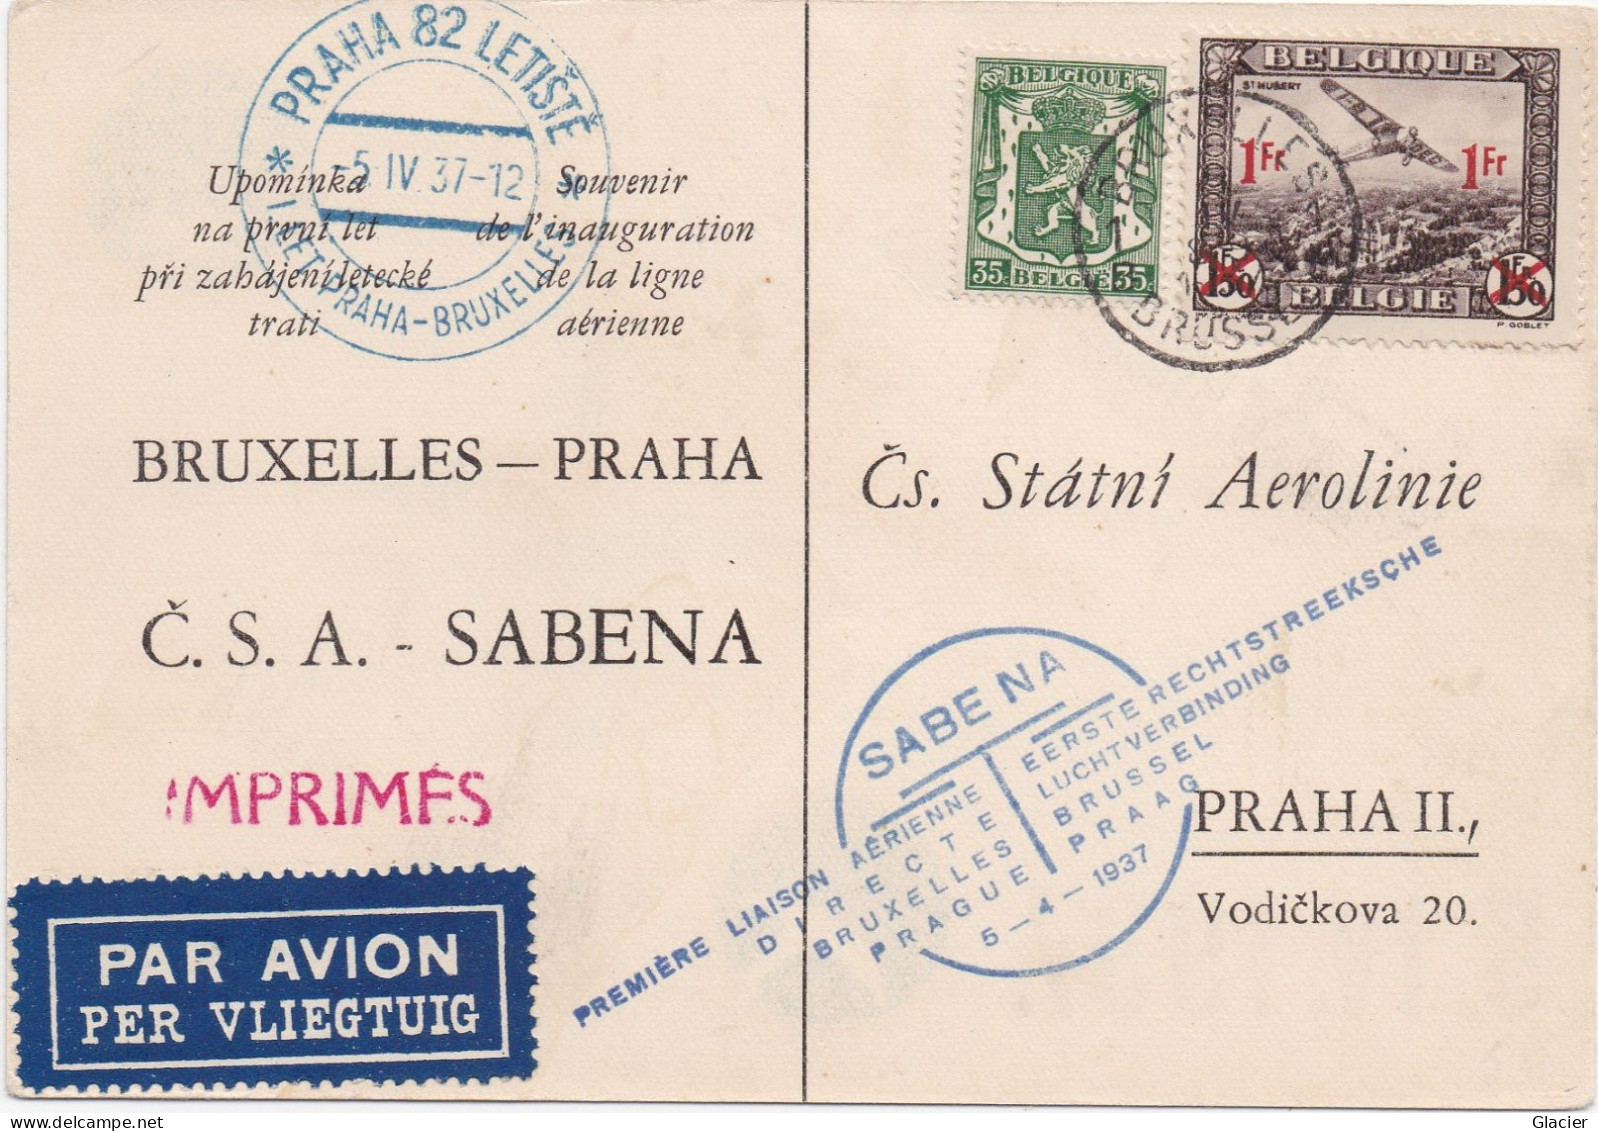 Sabena - Bruxelles-Praha - Liaison Aërienne 5-4-1937 - Č.S.A.-SABENA - Čs. Státni Aerolinie Praha II - Covers & Documents